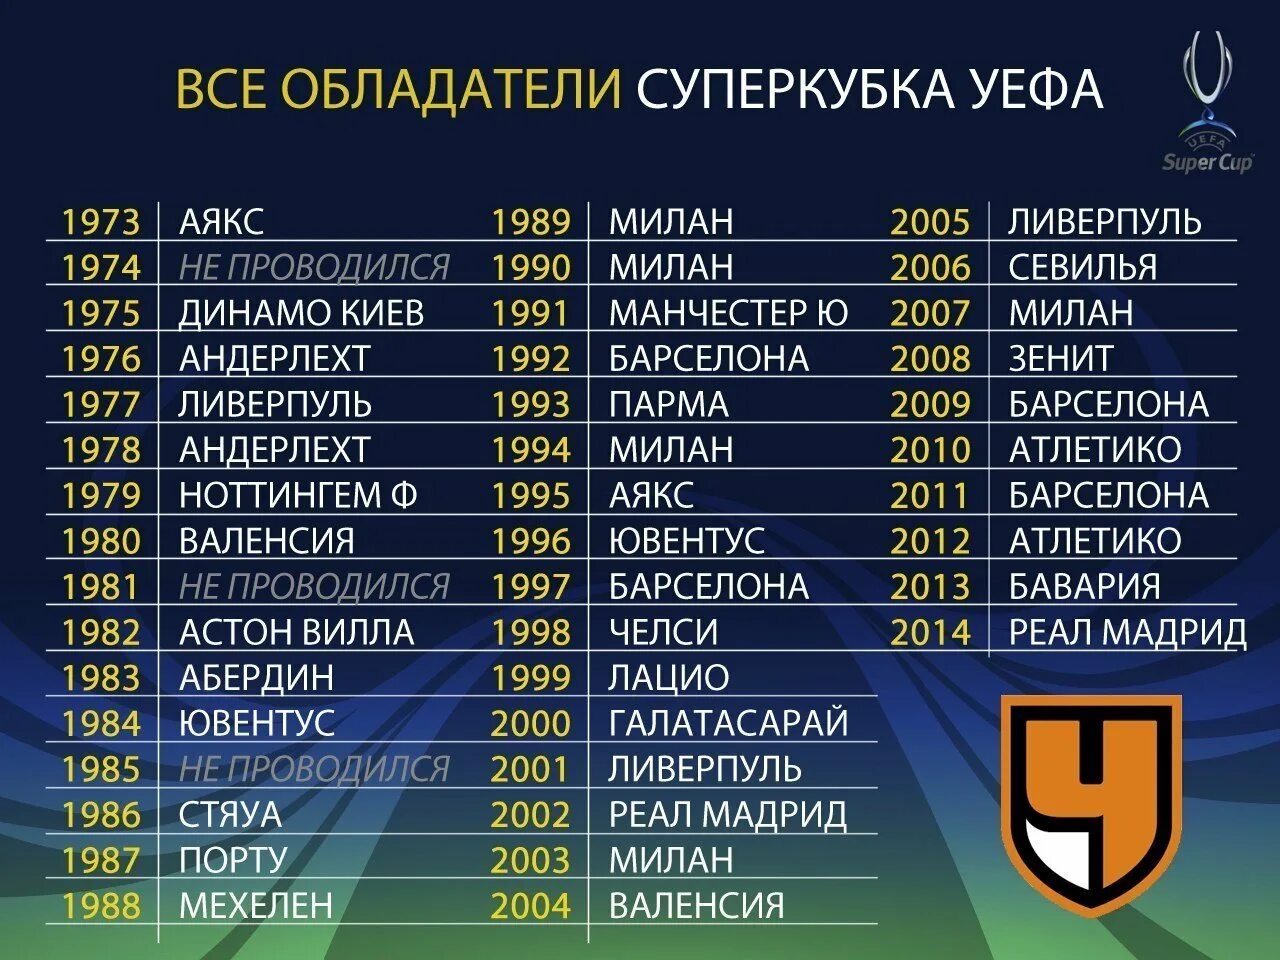 Победители Суперкубка УЕФА по годам. Список чемпионов по футболу за всю историю. Сколько раз реал выиграл